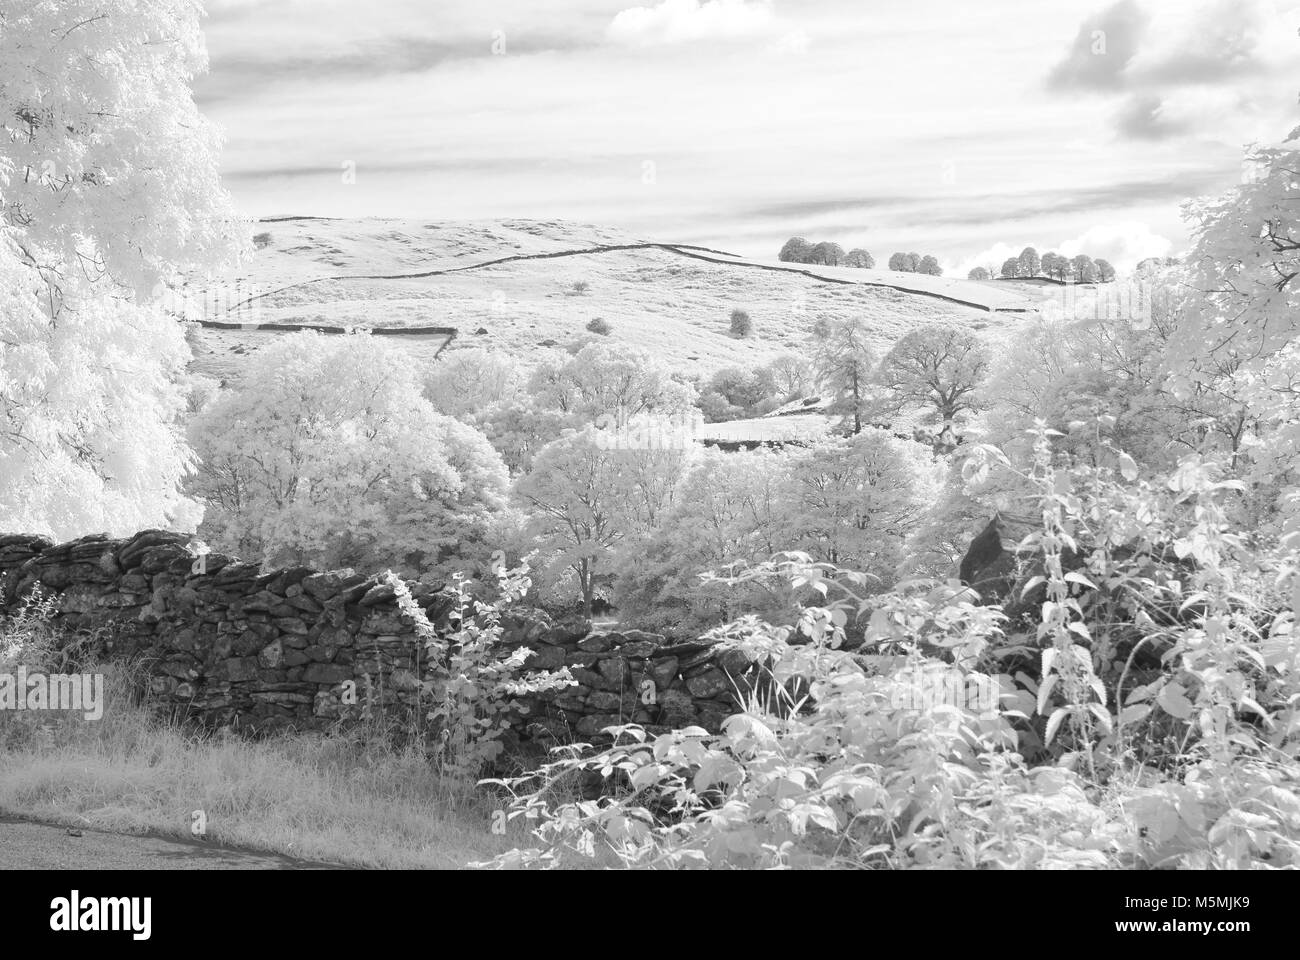 Fotoshoots von Kendall im Lake District. Infra Red DSLR, sonnigen Tag, Fotografin Claire Allen. Wunderschöne Landschaft Fotografie Stockfoto